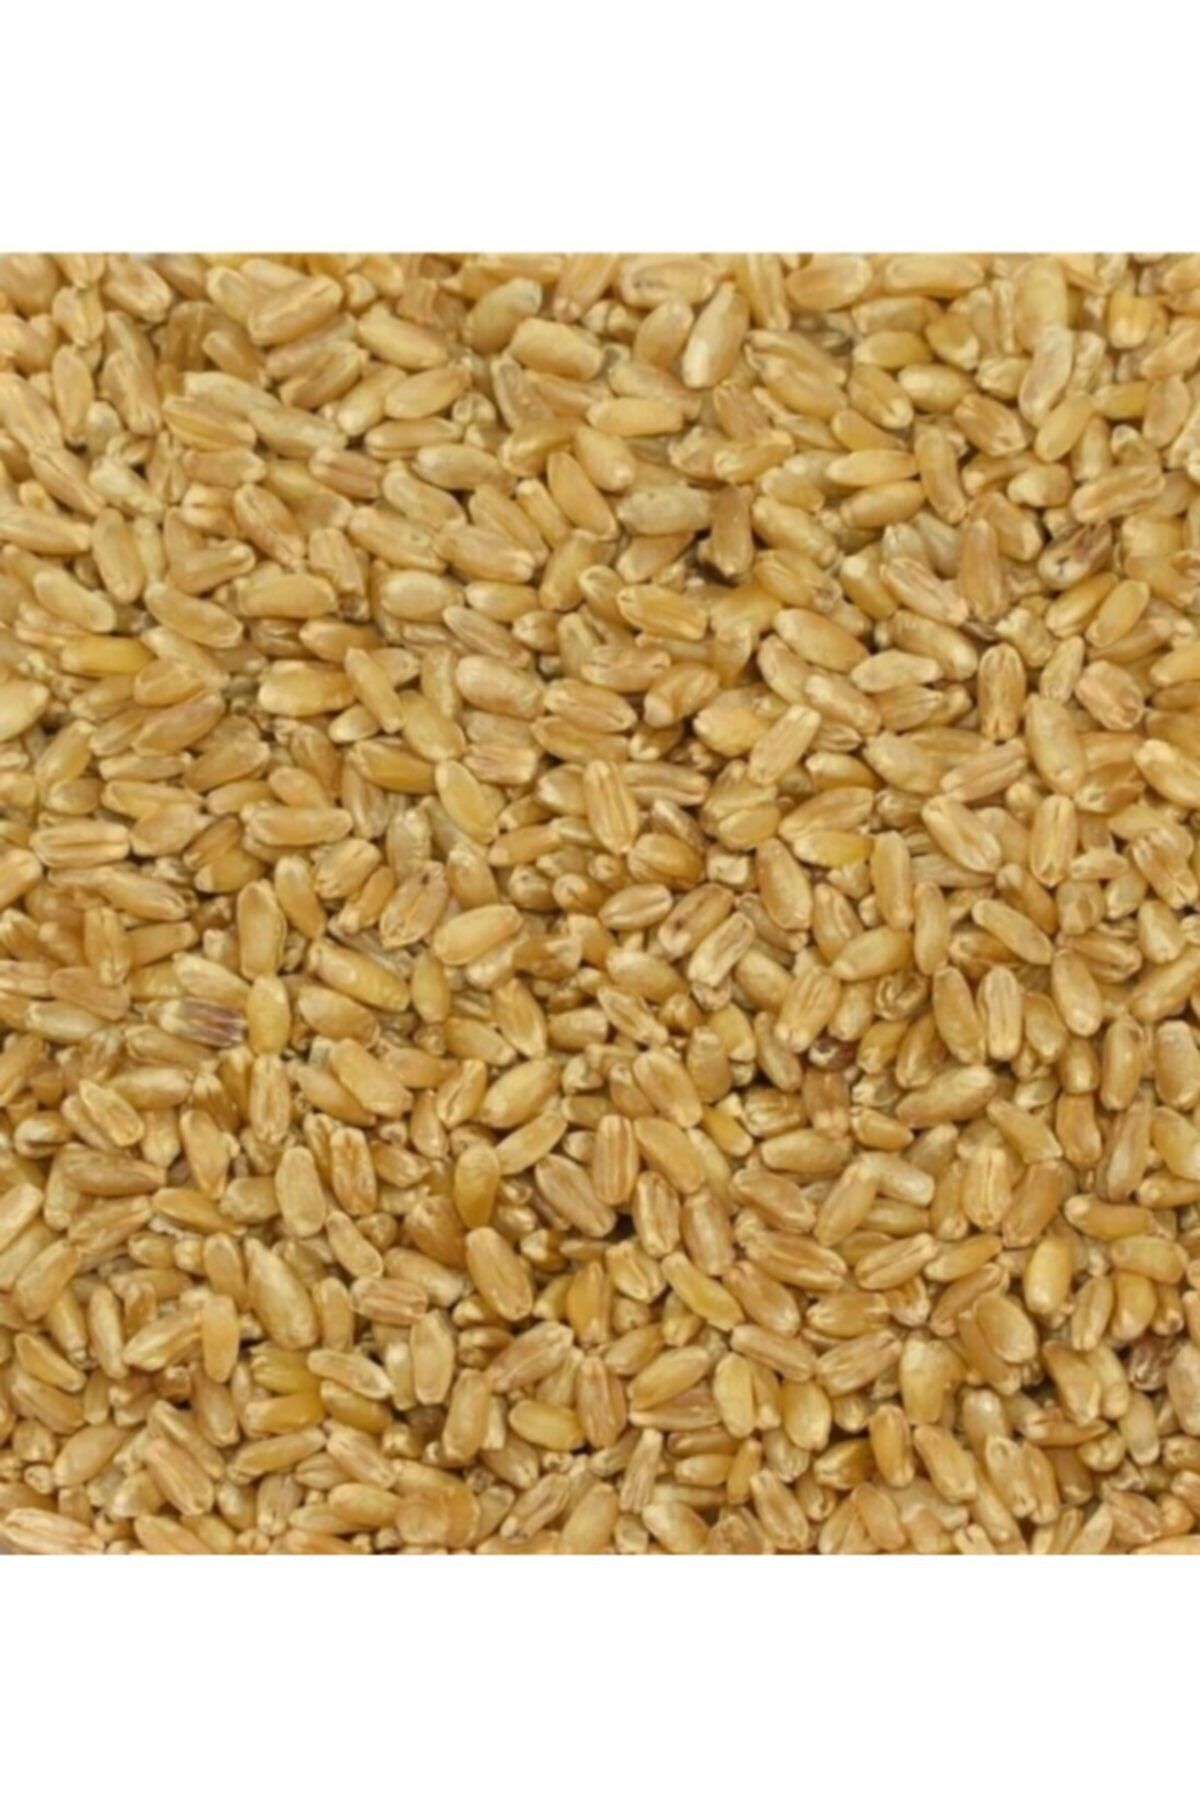 İpek Hediklik Buğday 1 Kğ Hediklik Buğday